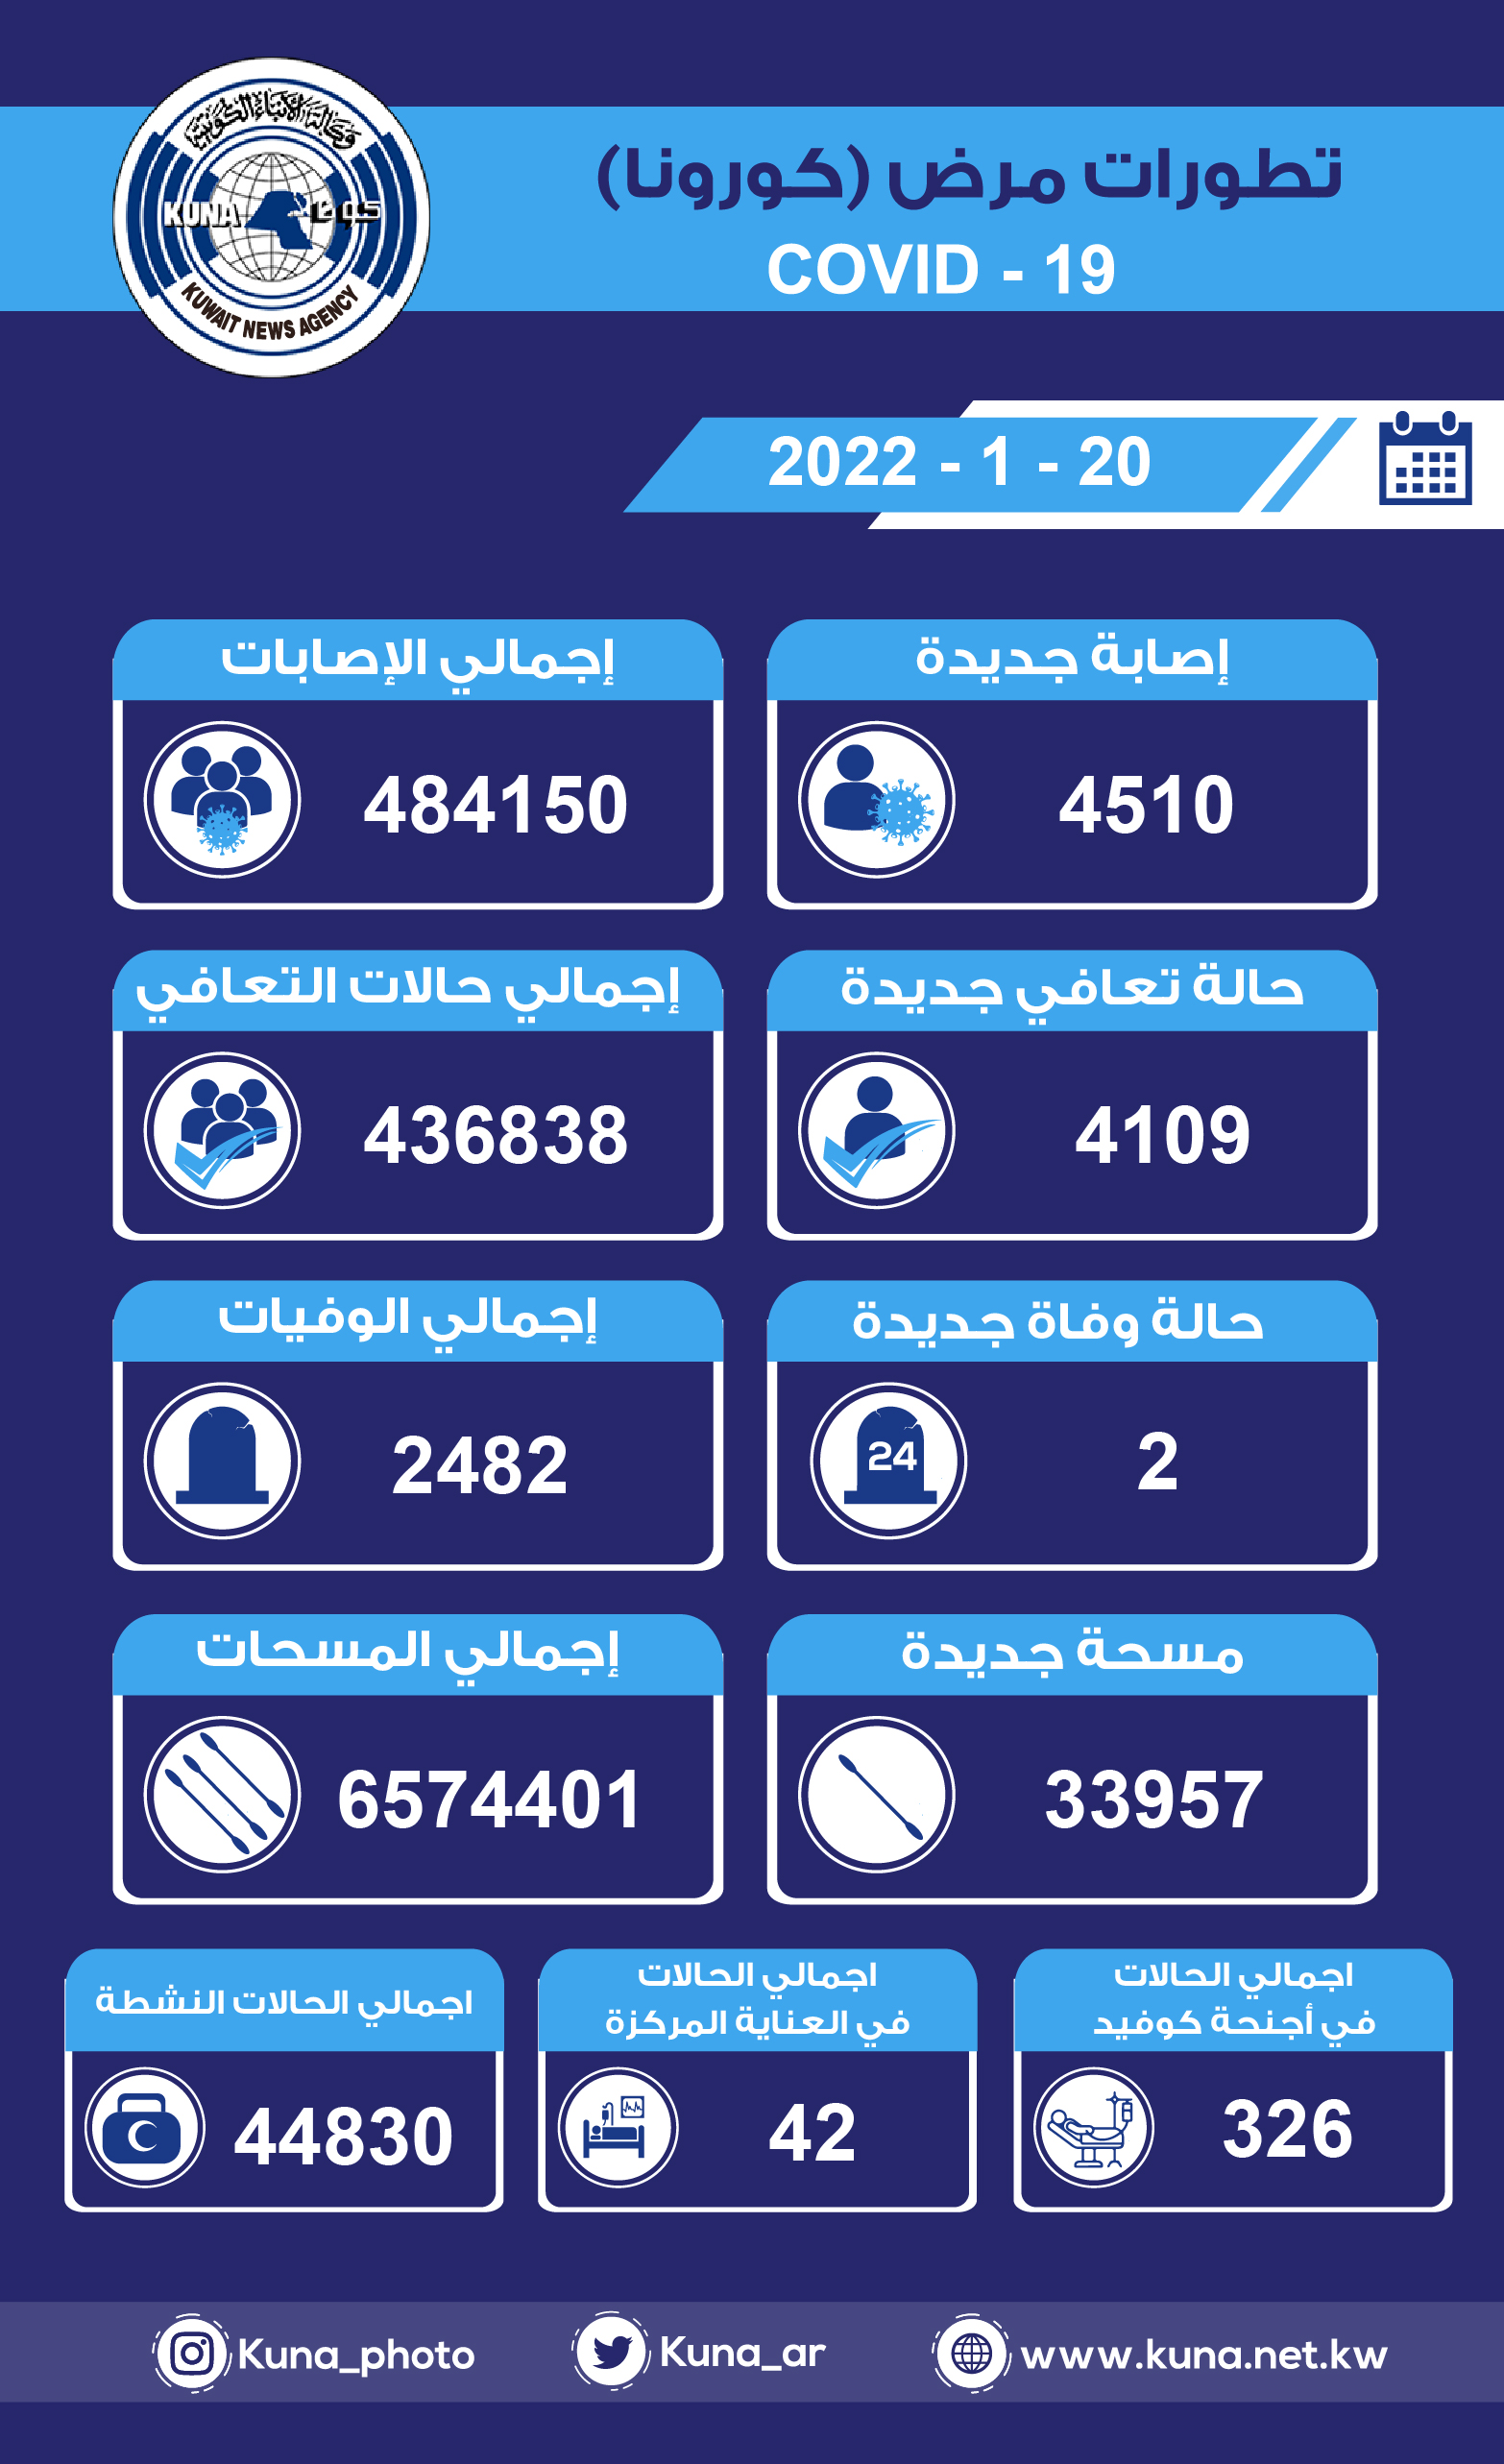 (الصحة) الكويتية: 4510 إصابات جديدة ب(كورونا) وشفاء 4109 وتسجيل حالتي وفاة خلال الساعات ال24 الماضية